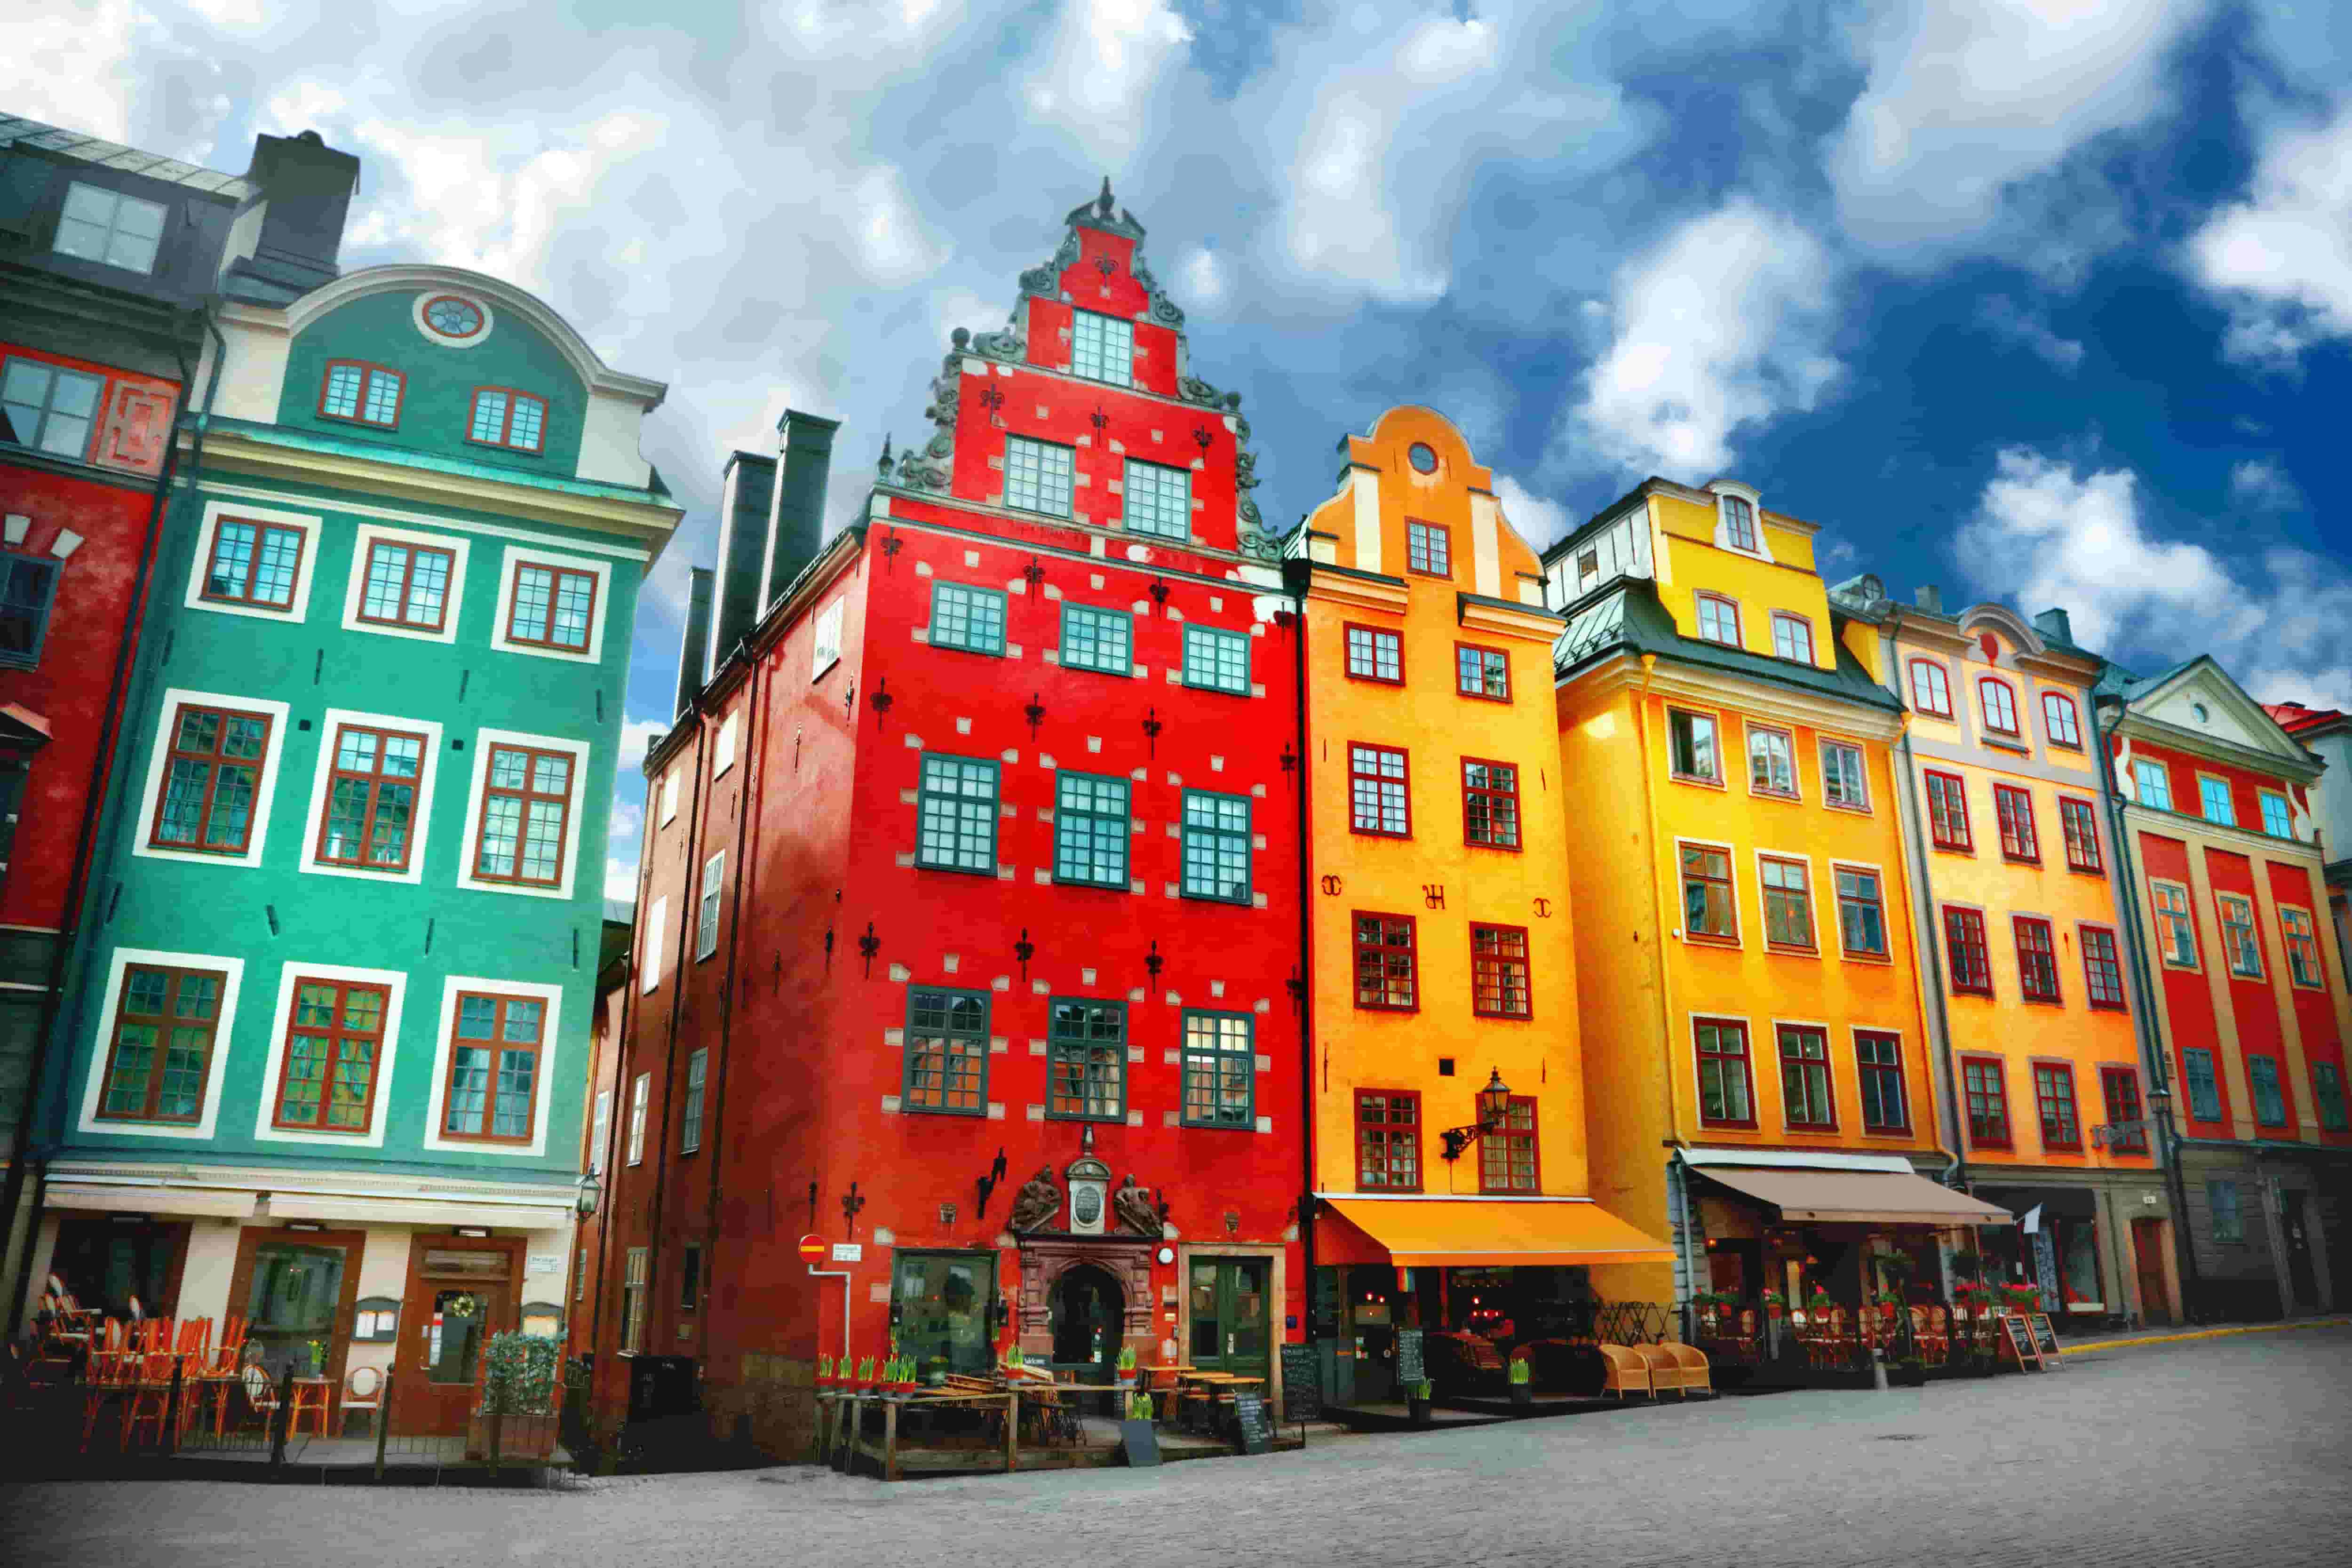 Instagramis kuulsad Stortorgeti väljaku värvilised majad